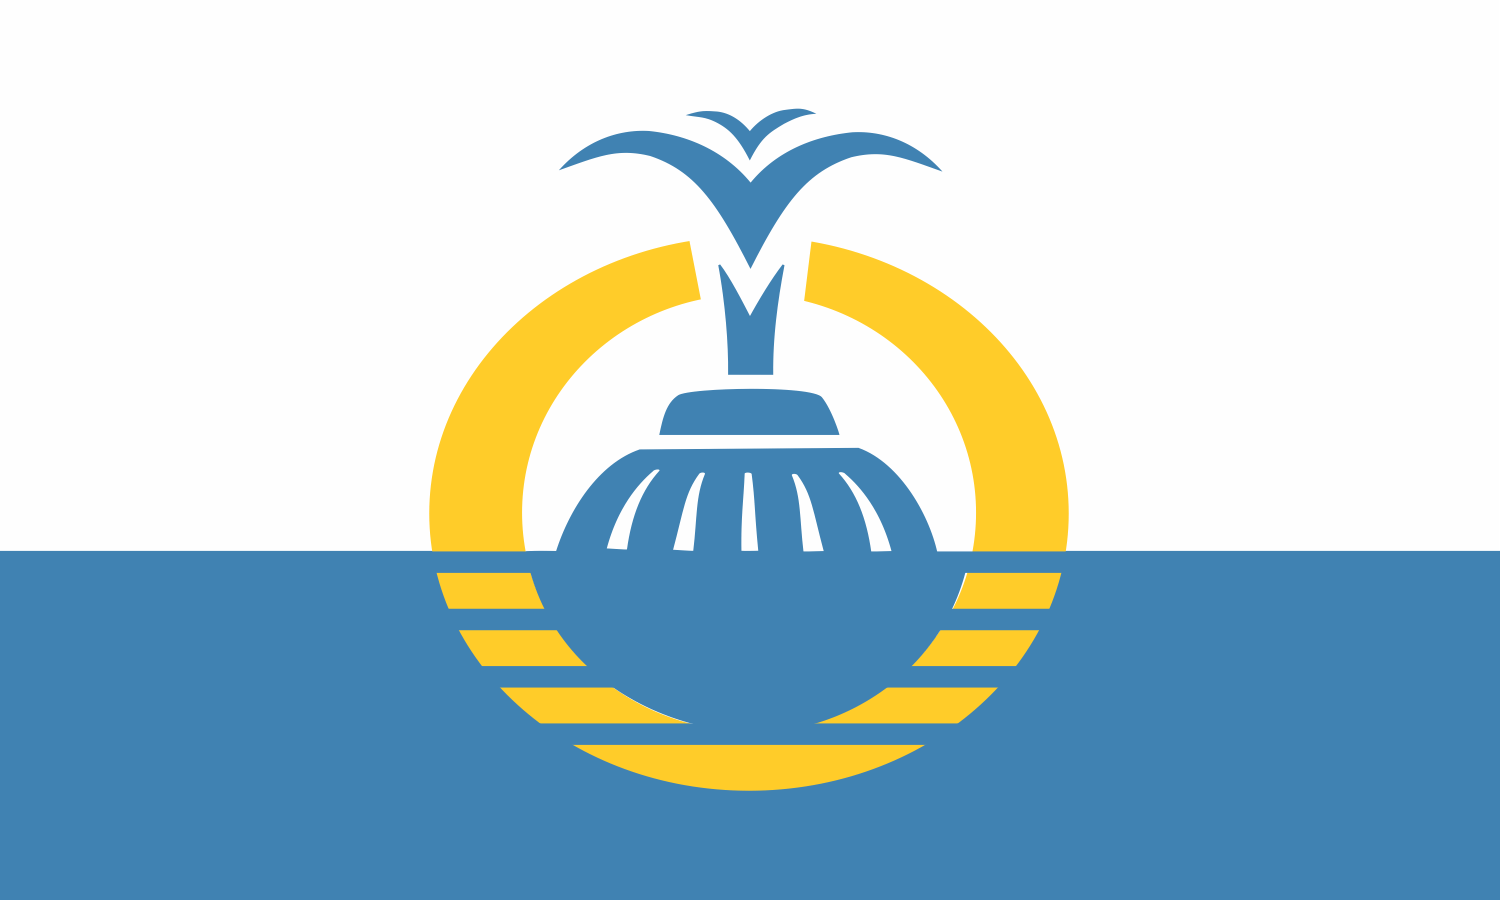 [Flag of Orlando, Florida]